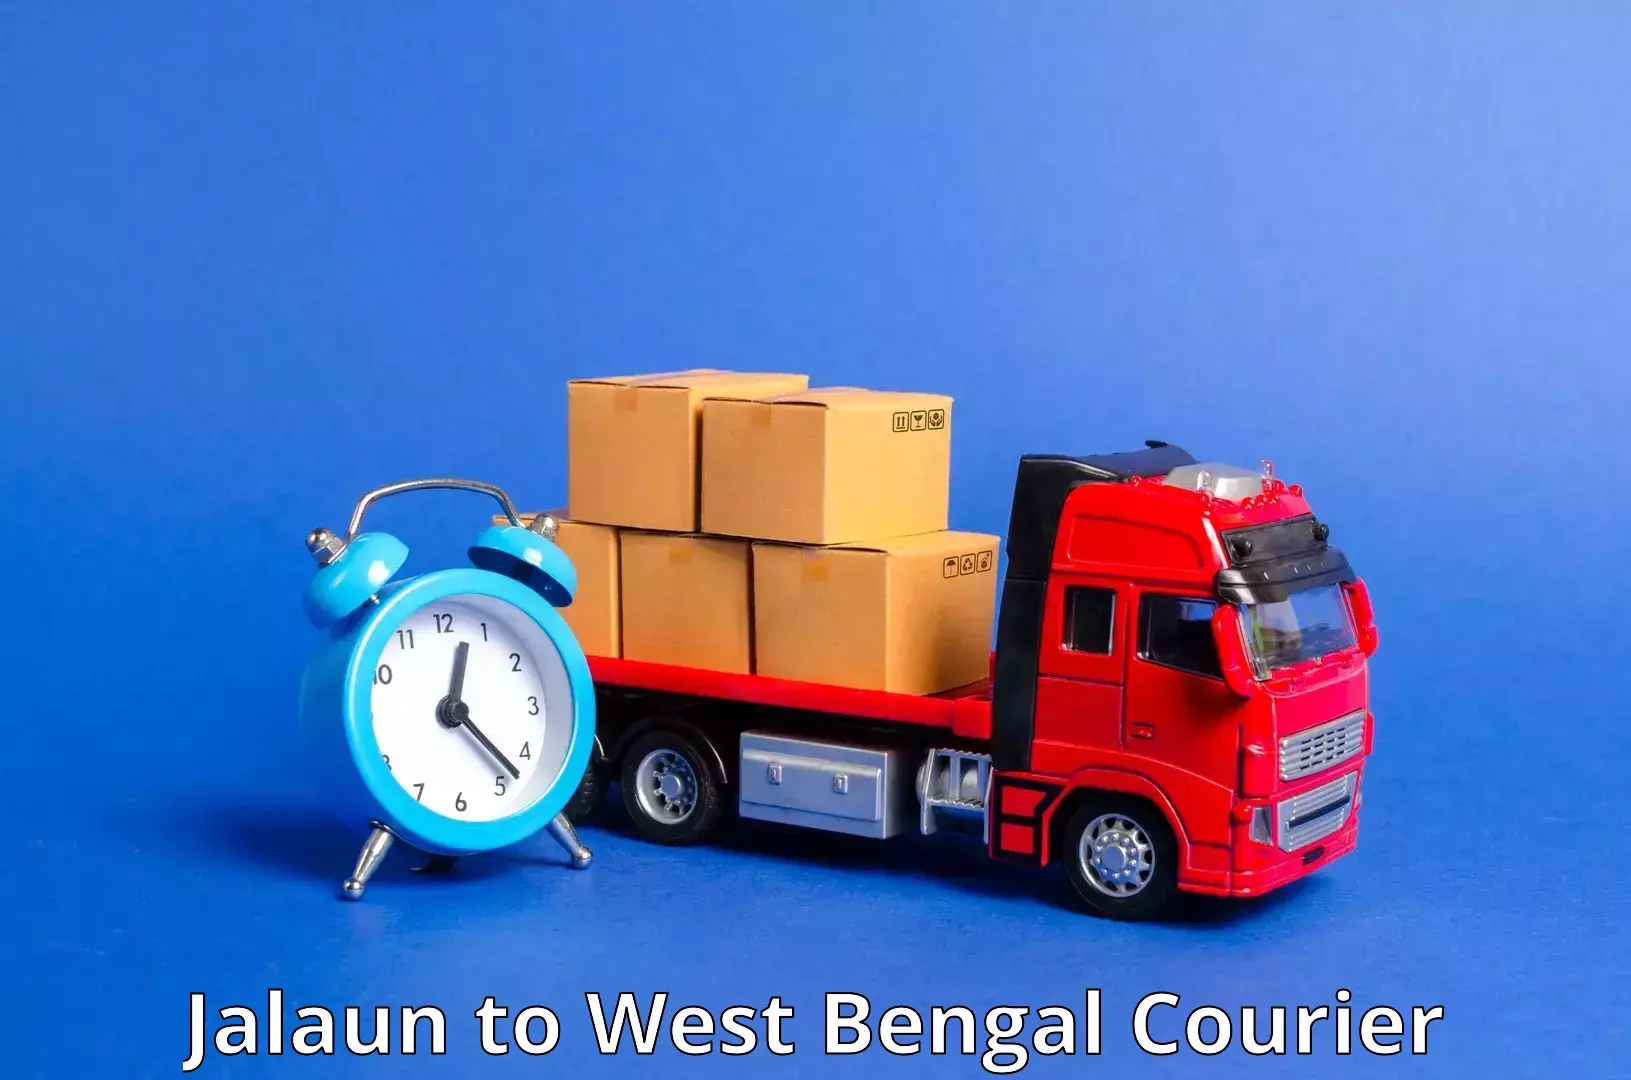 Express logistics service Jalaun to Kolkata